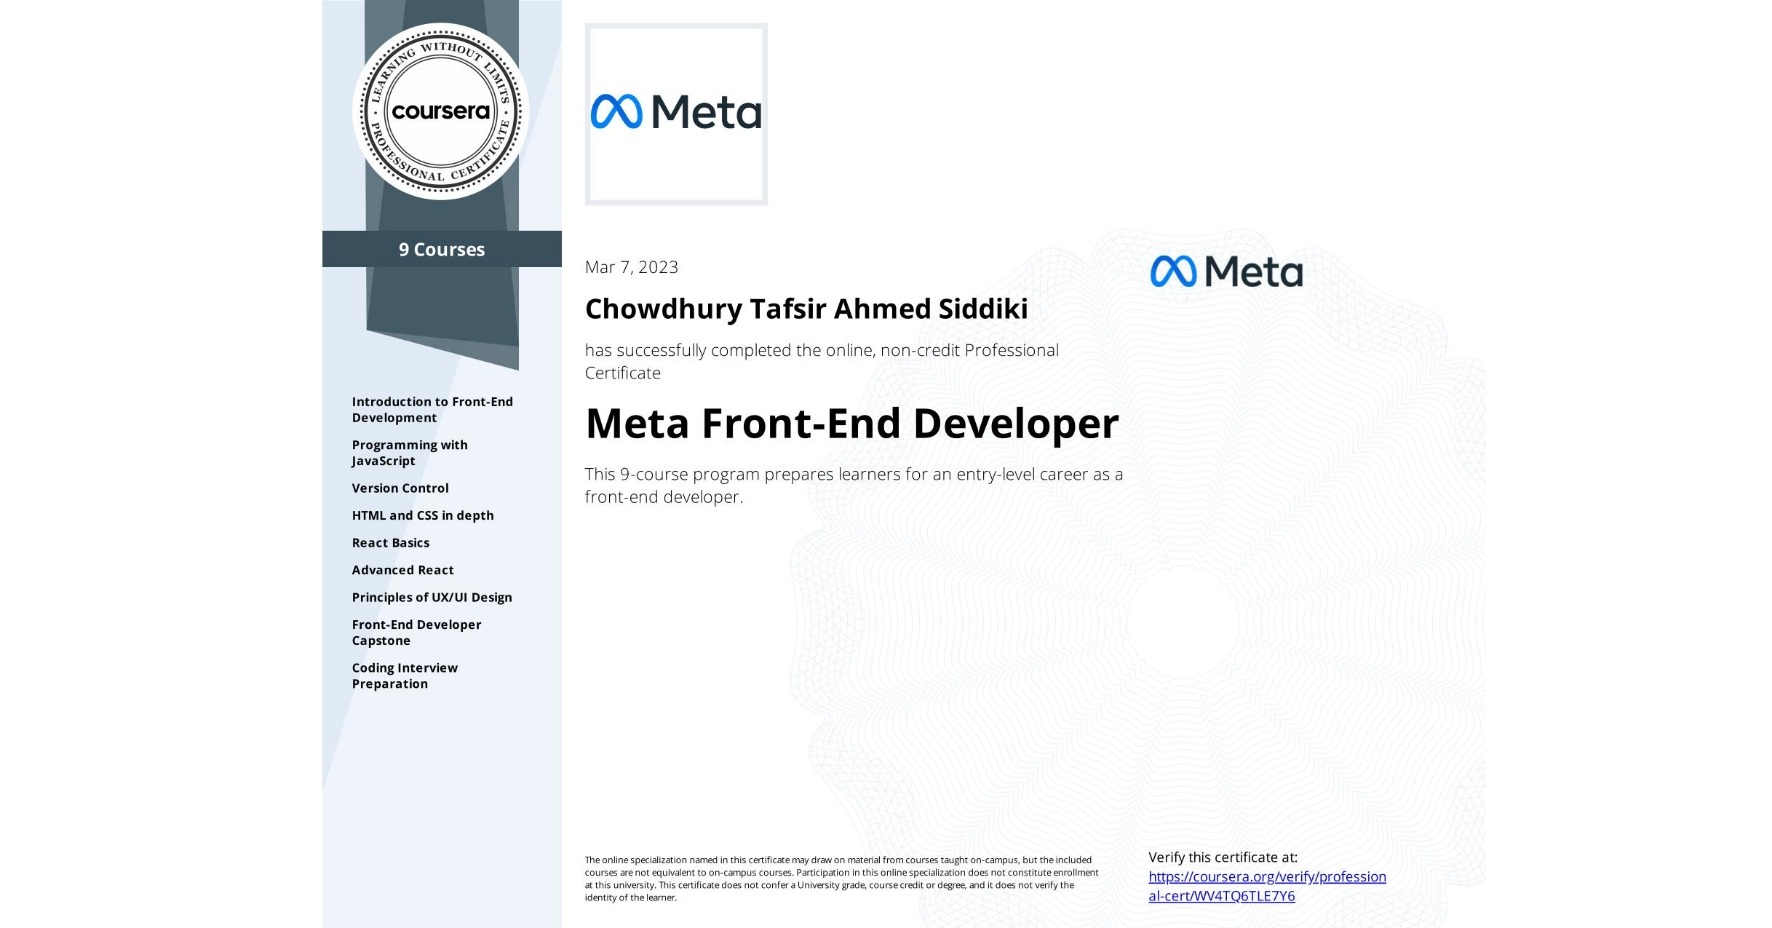 Backend Developer - Certified by Meta